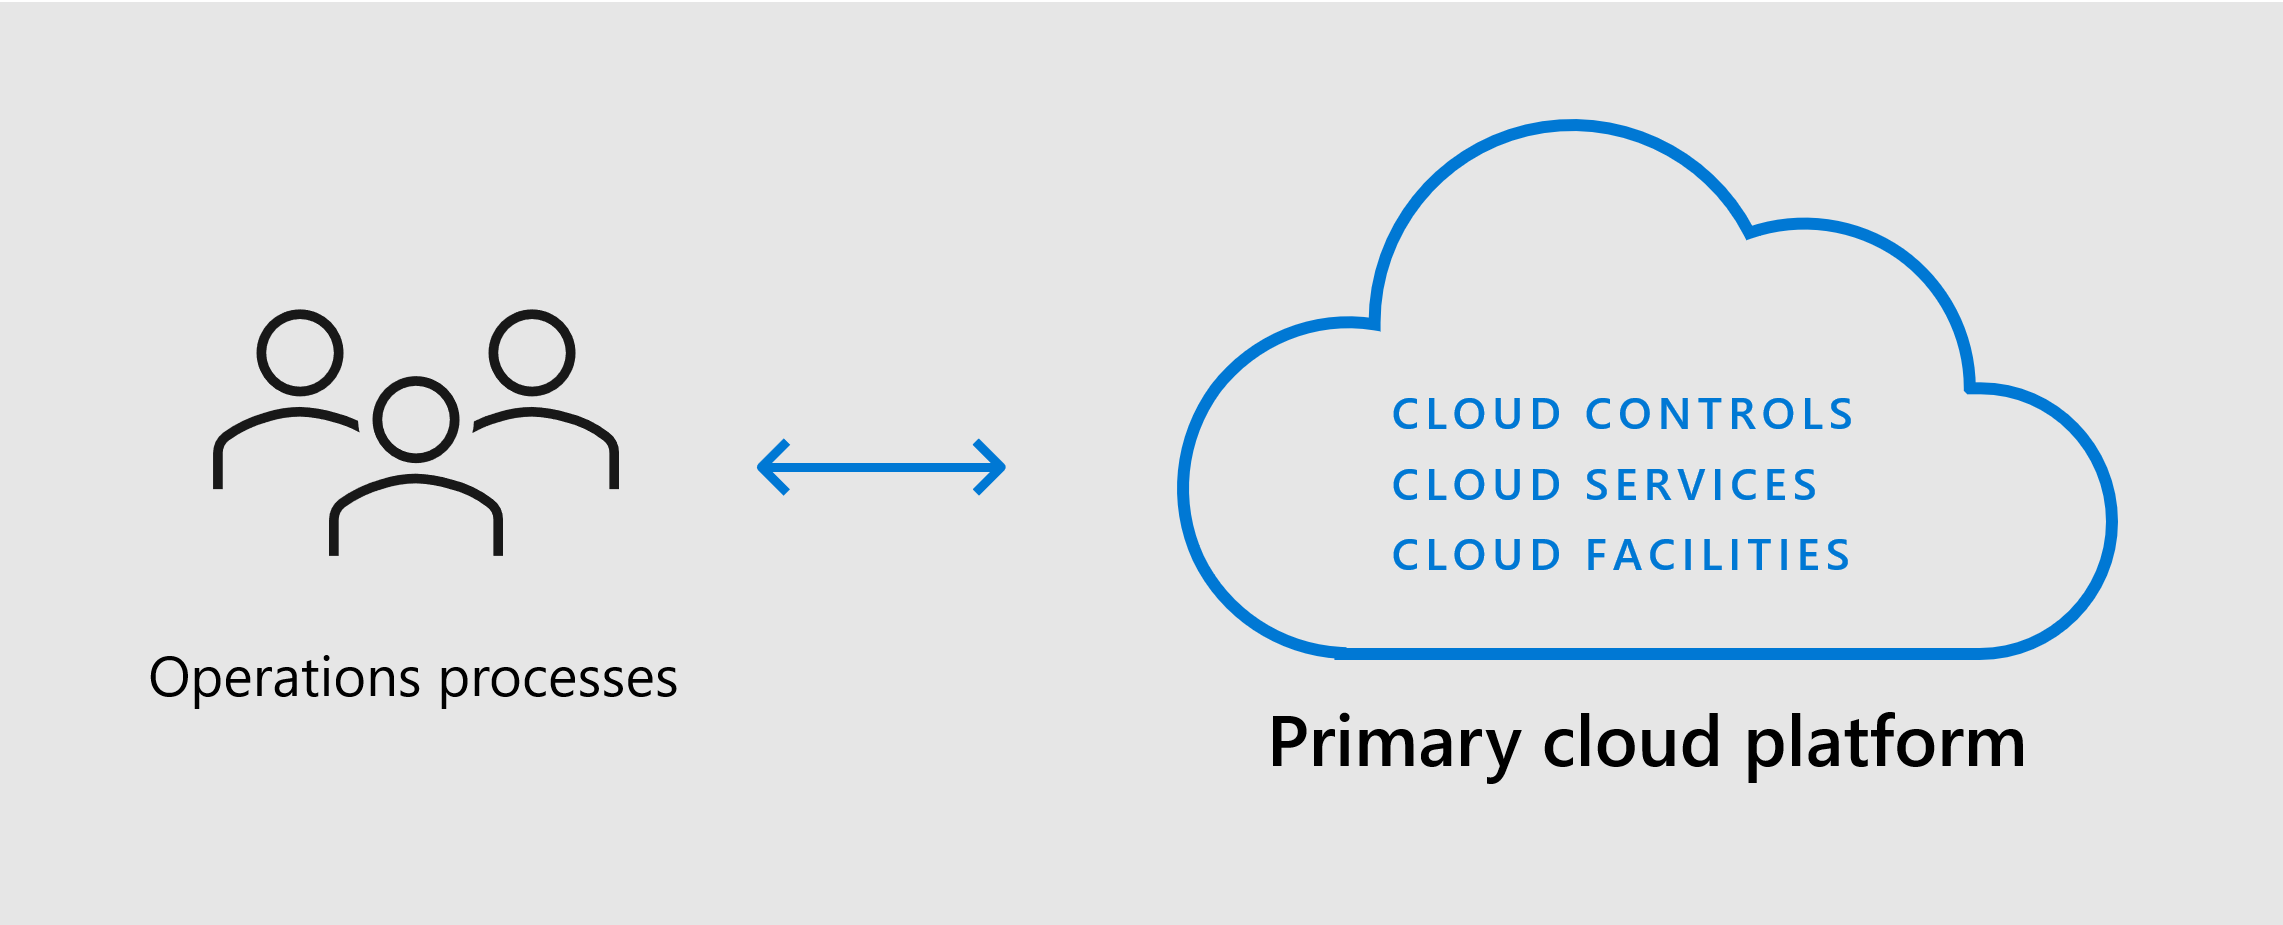 Diagram met de verschuiving van een unidirectionele cloudmigratie naar een hybride migratie in twee richtingen en migratie met meerdere clouds die in de volgende alinea worden beschreven.